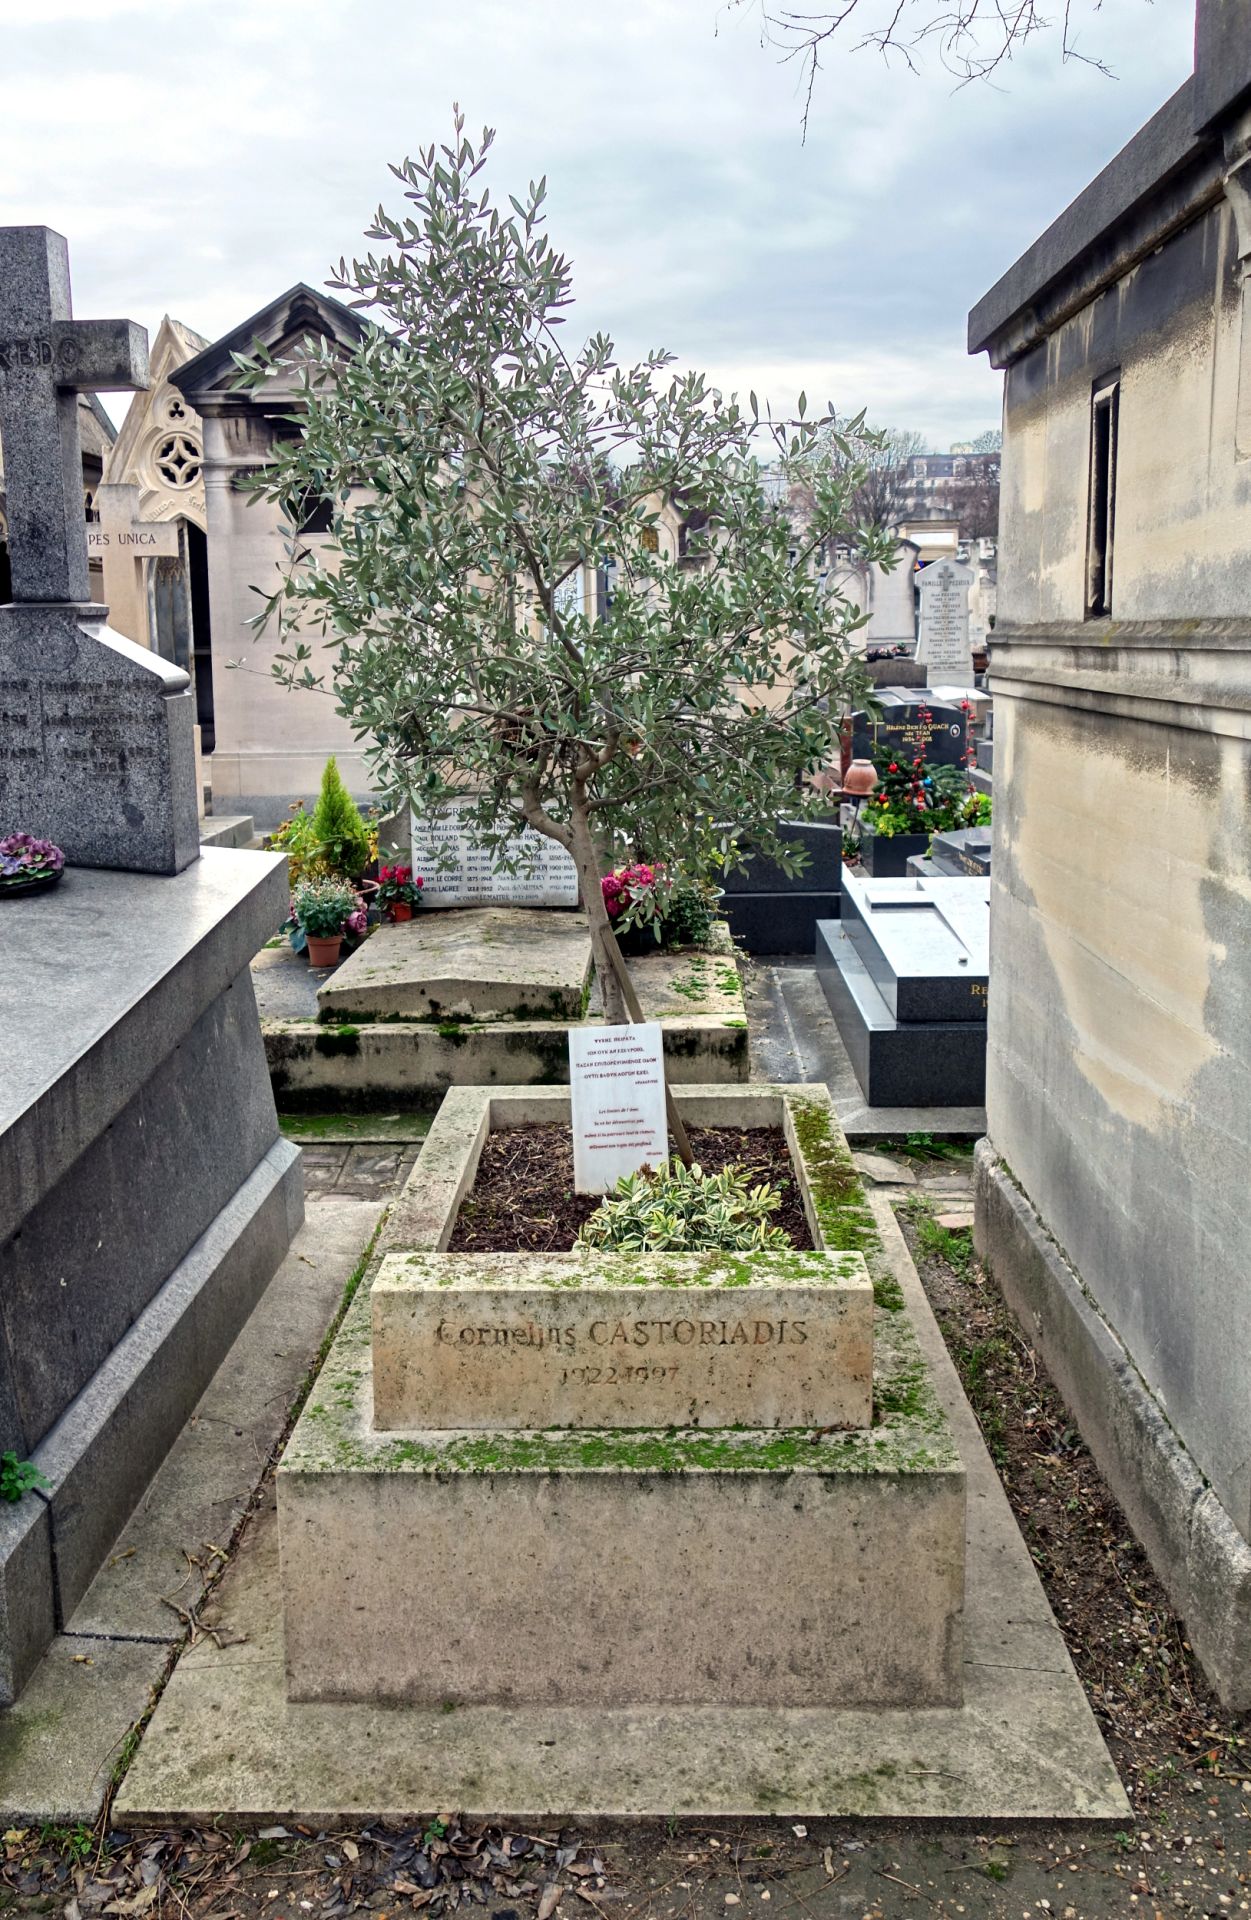 Ο Τάφος του Κορνήλιου Καστοριάδη στο κοιμητήριο Montparnasse.